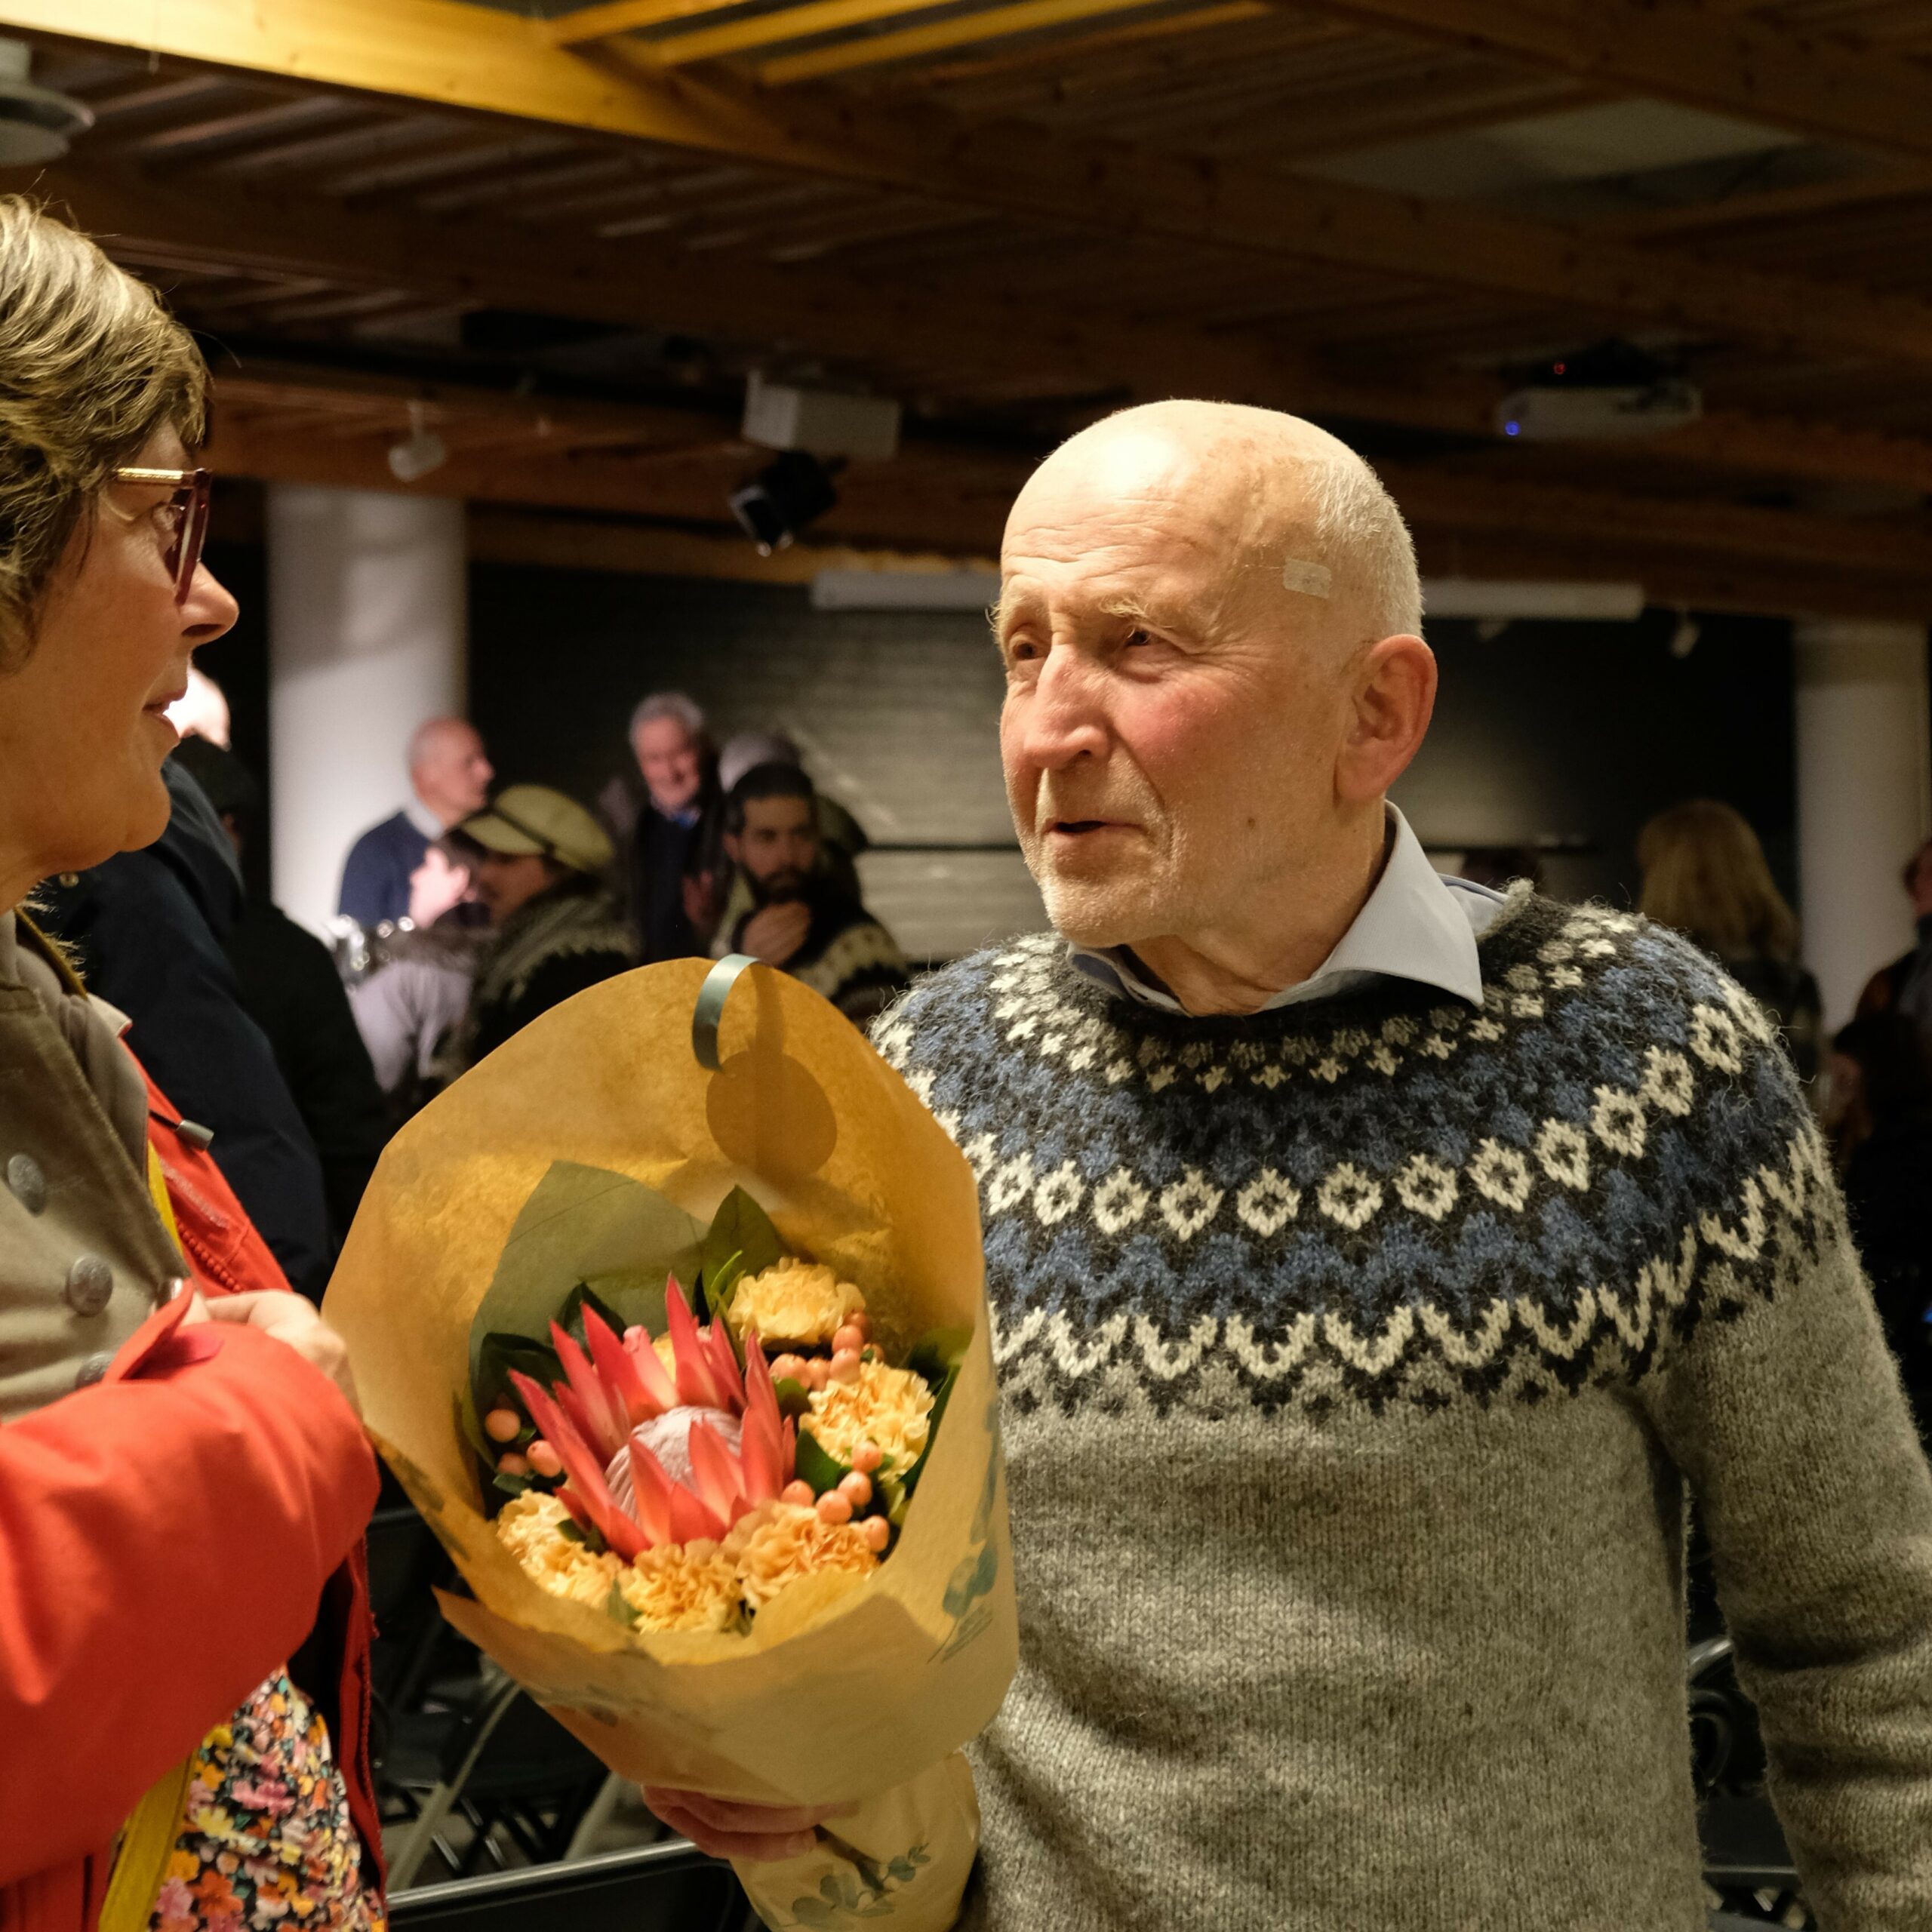 En eldre mann i en mønstret genser snakker med en kvinne mens han holder en blomsterbukett.